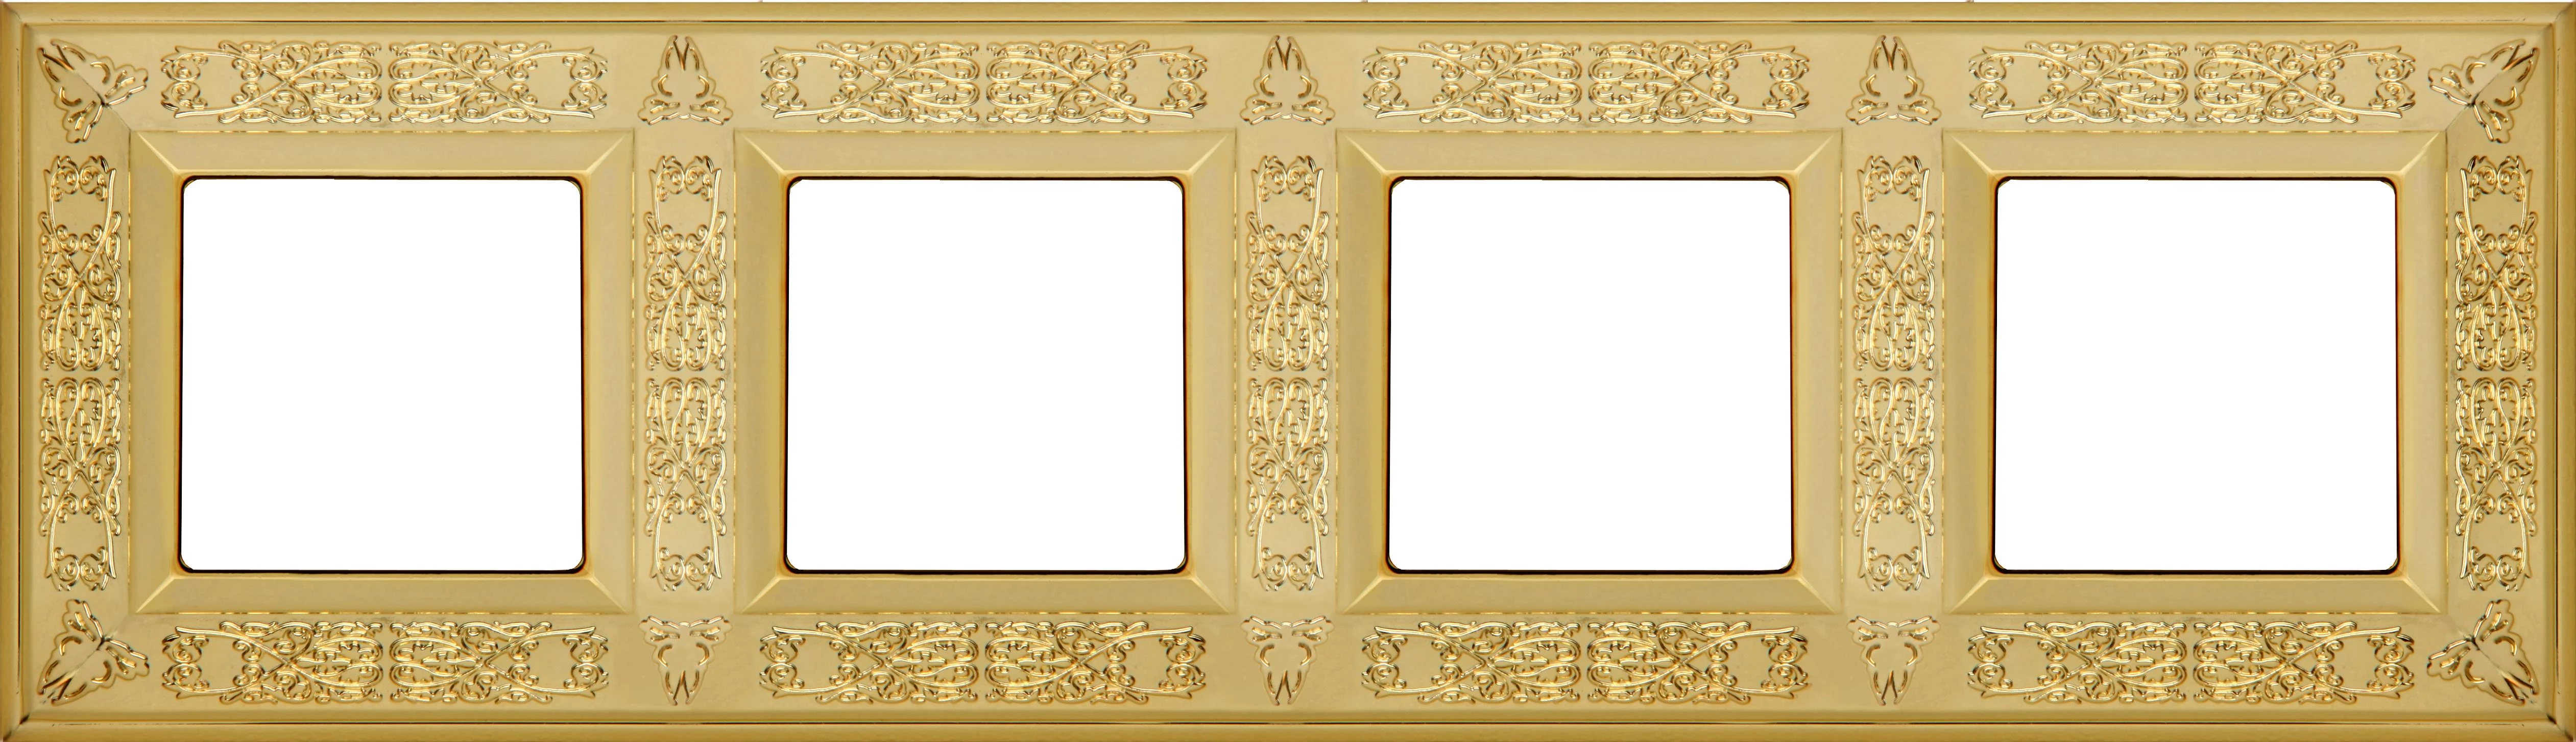  артикул FD01414OB название Рамка 4-ая (четверная), цвет Светлое золото, Granada, Fede